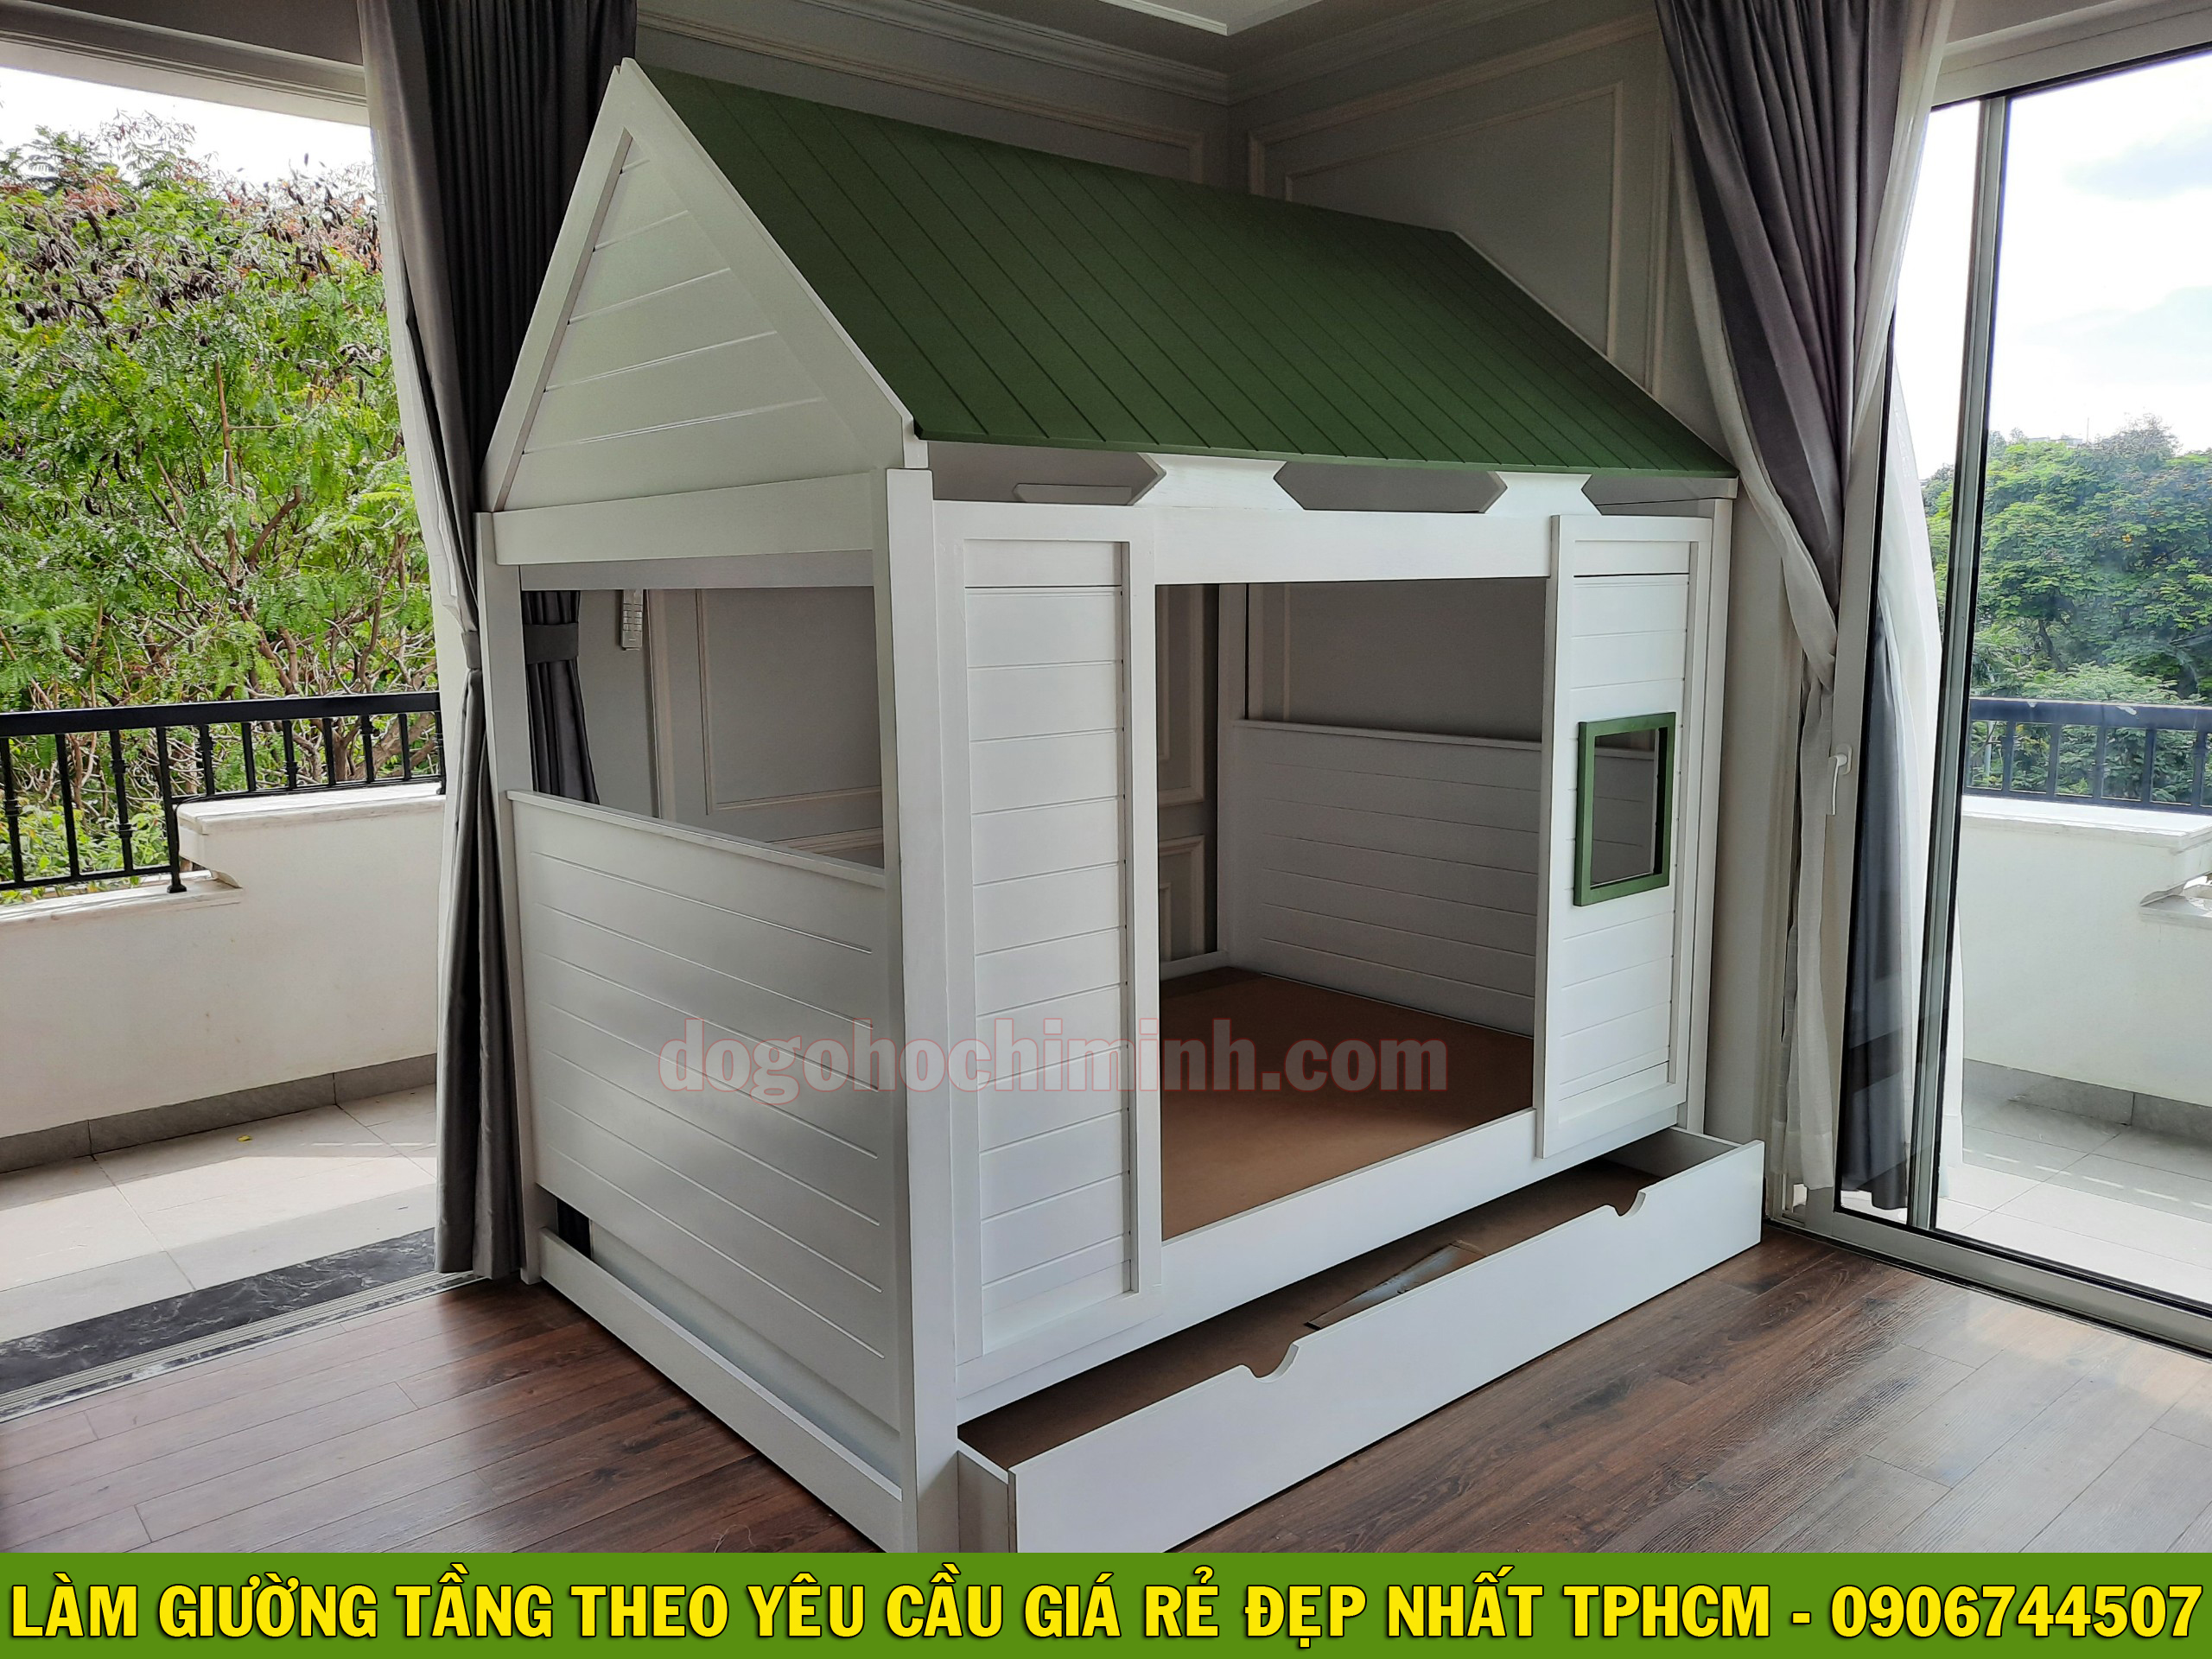 Làm giường 2 tầng mái nhà đẹp cute giá rẻ theo yêu cầu tại TPHCM 2020